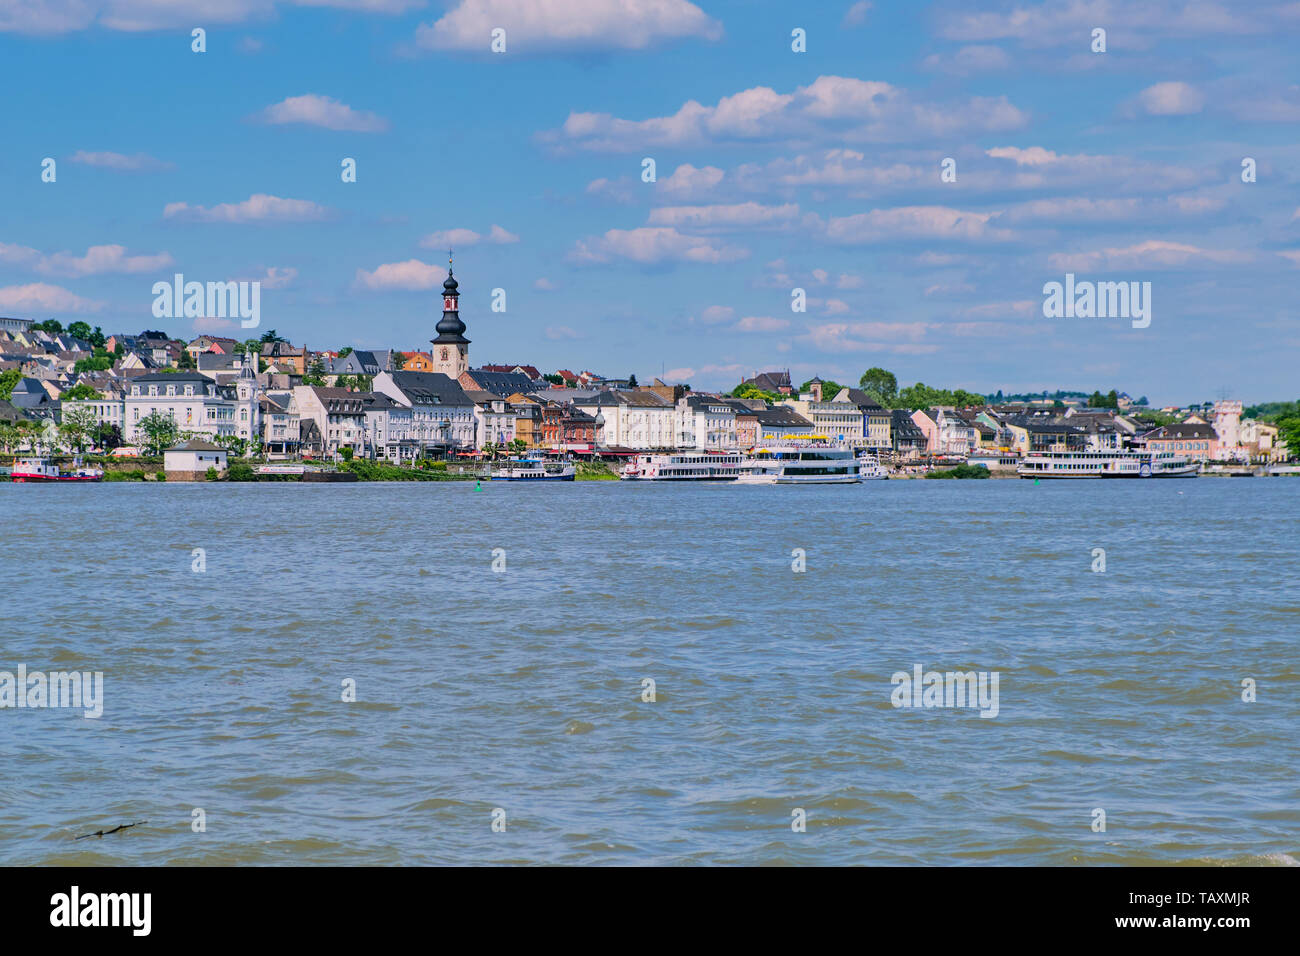 Ruedesheim, Germany - May 26, 2019: city panorama of Ruedesheim at the river rhine Stock Photo